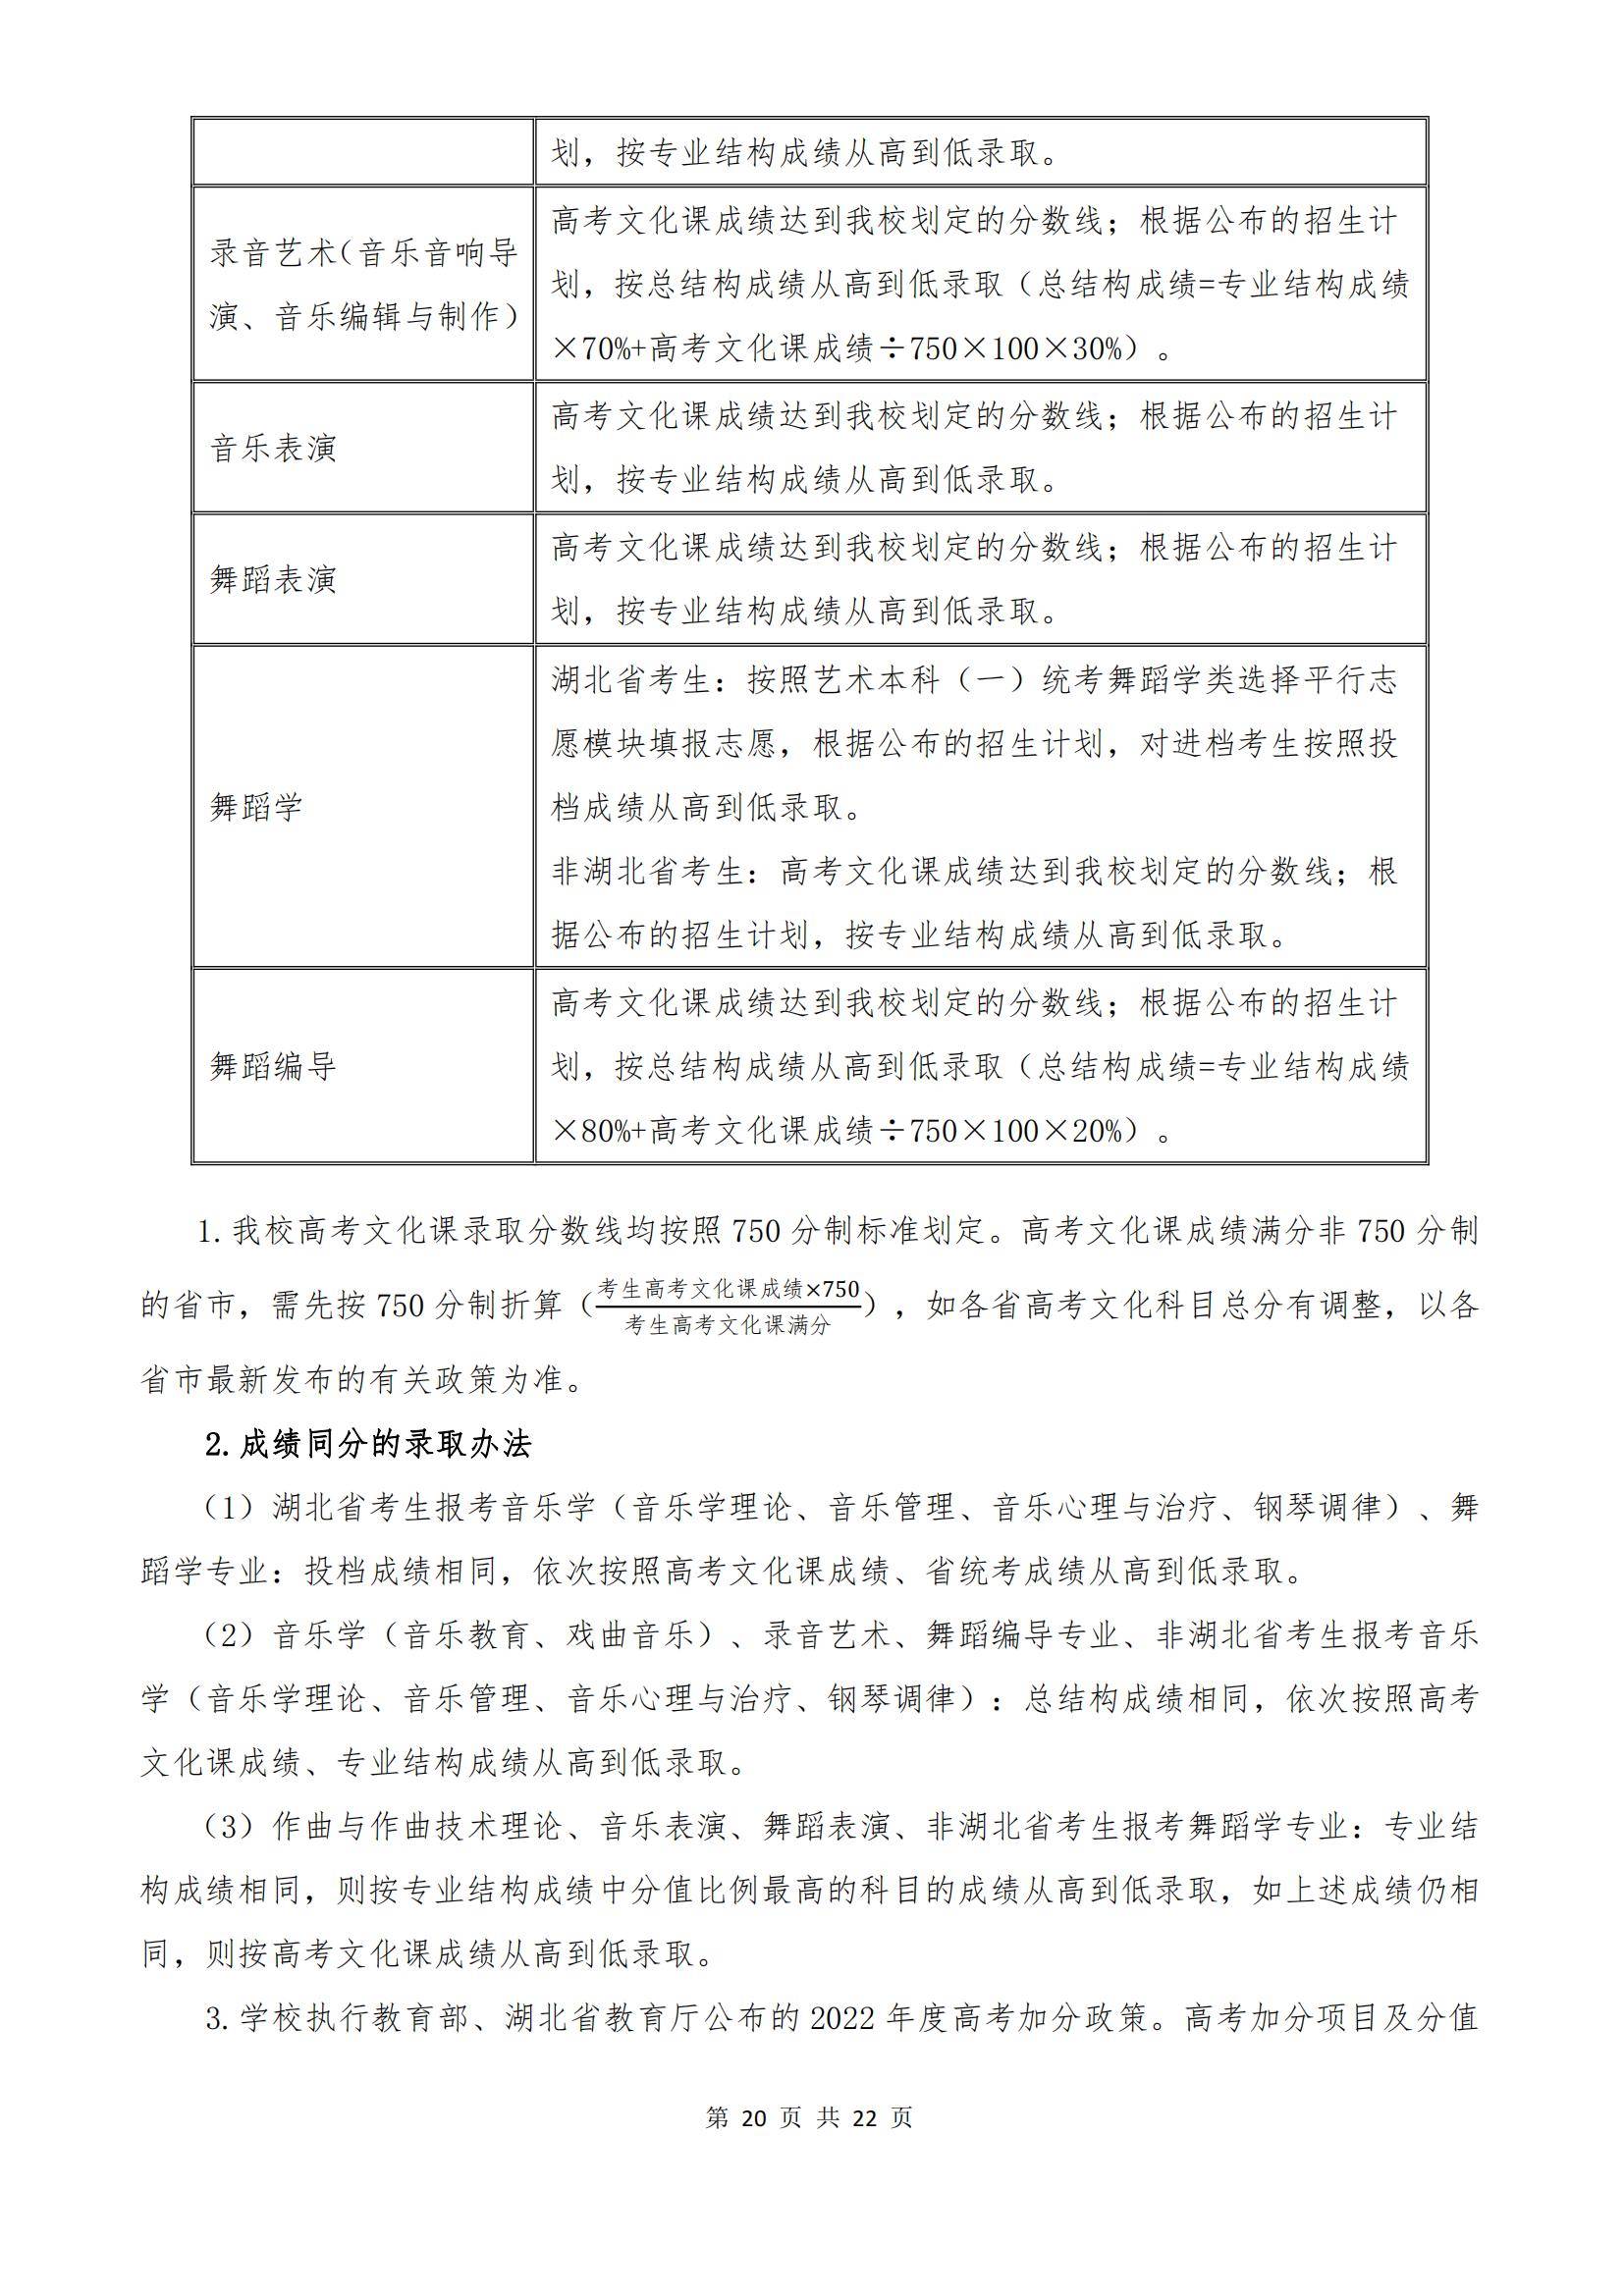 武汉音乐学院2022年普通本科招生简章_19.jpg